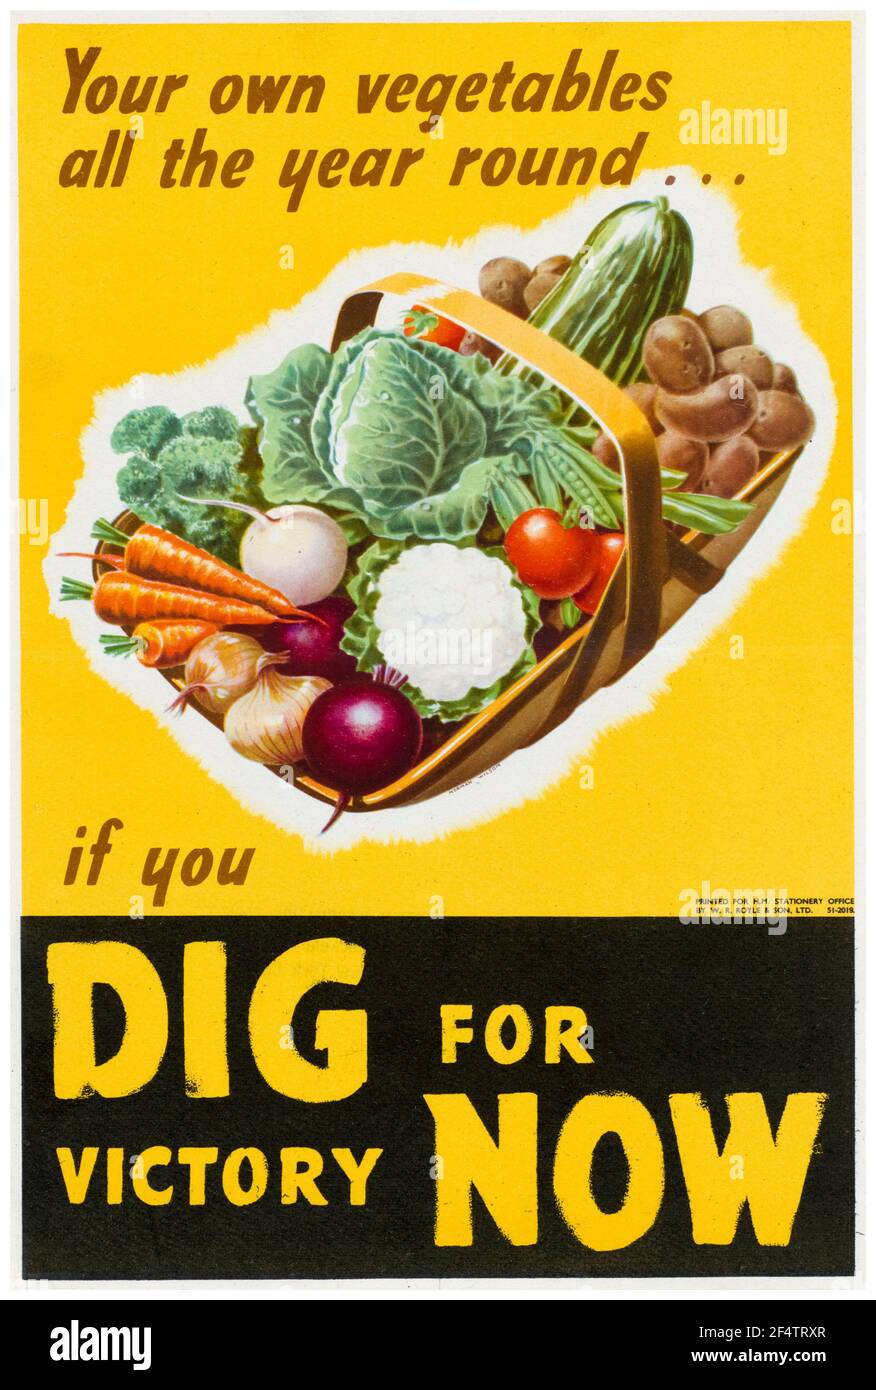 Britisch, WW2, Lebensmittelproduktion: Graben für Sieg - Ihr eigenes Gemüse das ganze Jahr über, Poster, 1942-1945 Stockfoto